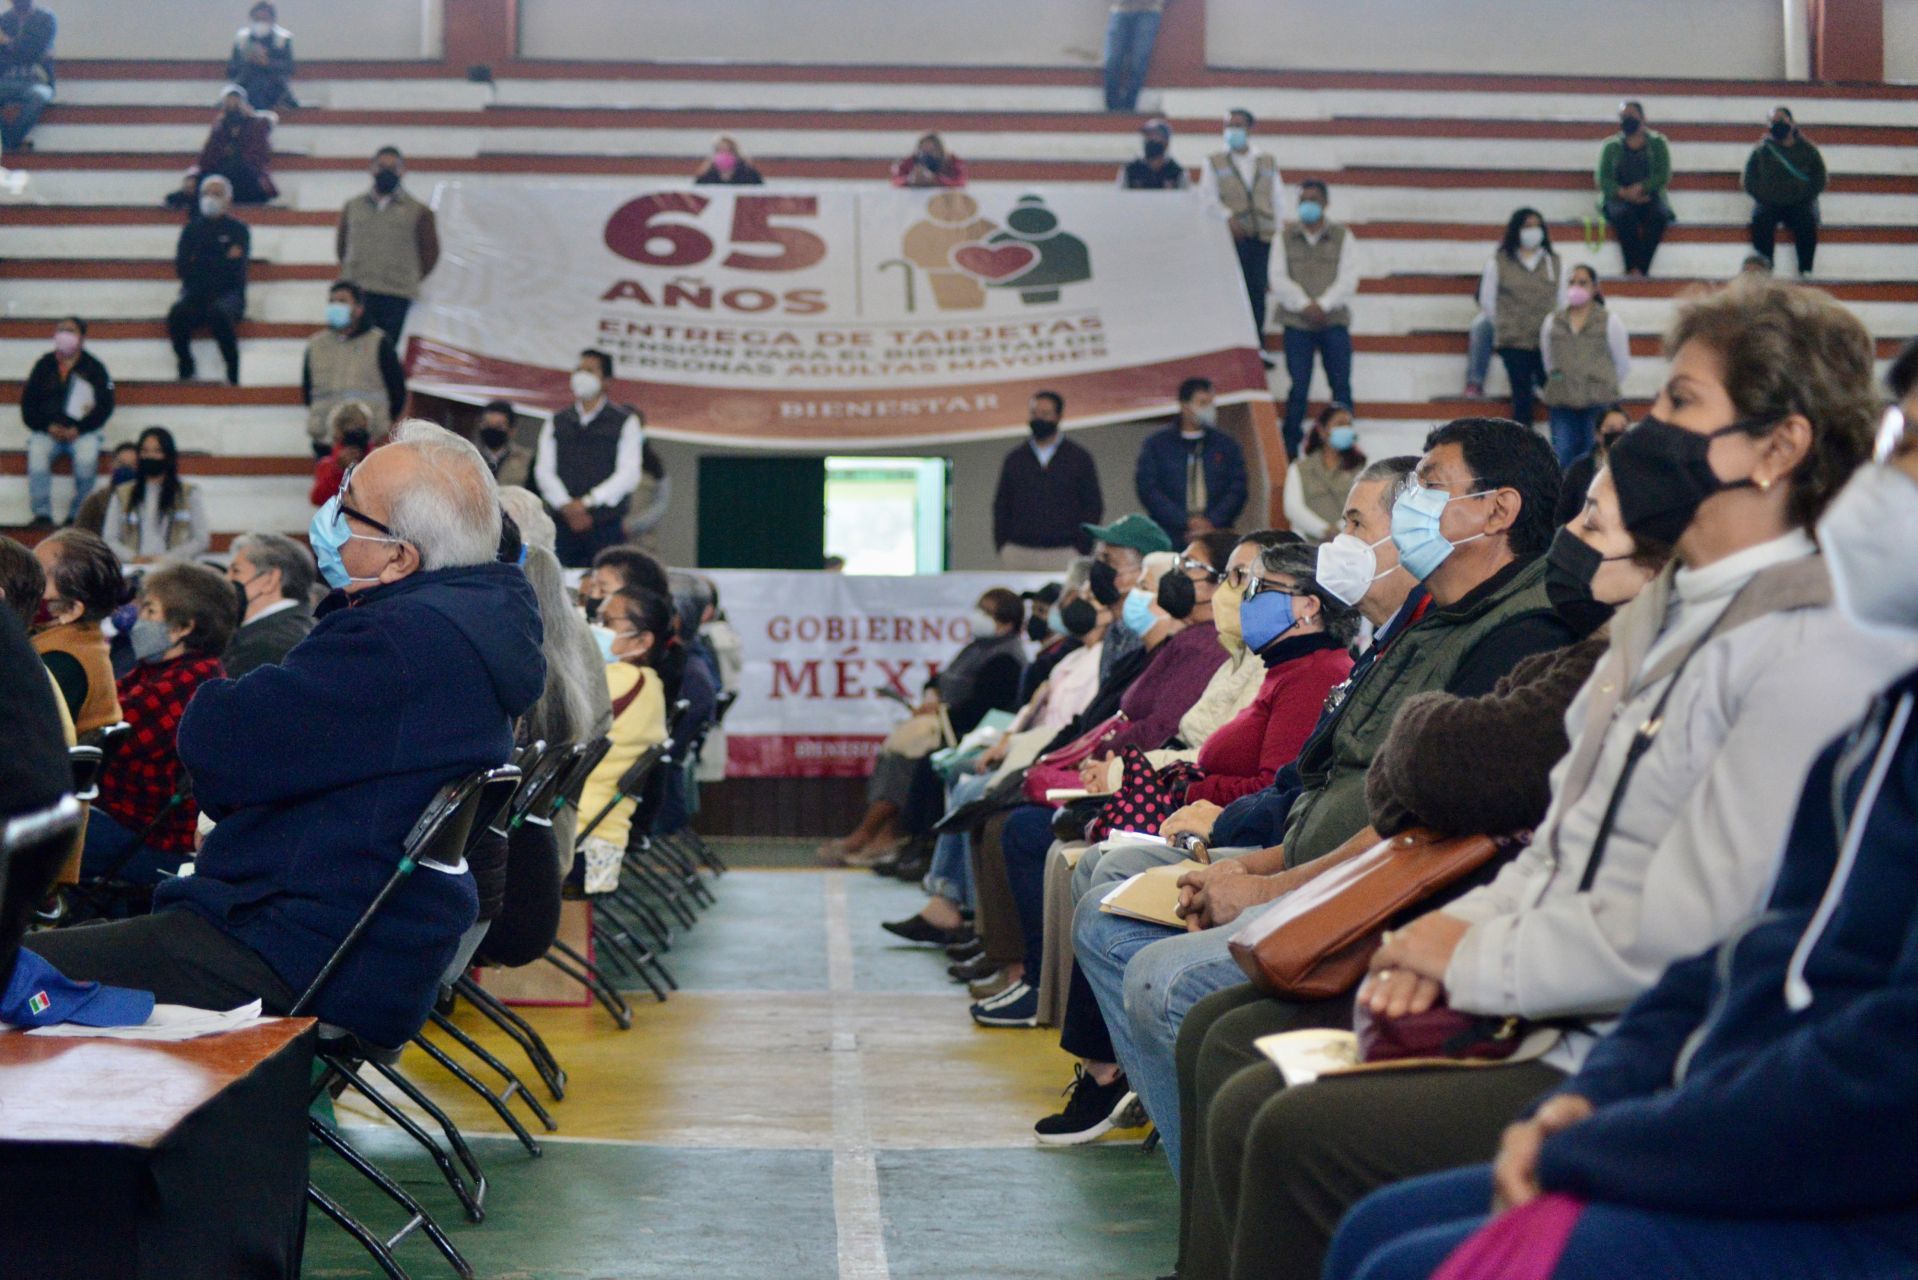 El Gobierno de México informó que las personas que ya cumplieron los 65 años, podrán registrarse al programa de Pensión Adulto Mayor (Foto: Yerania Rolón/Cuartoscuro.com)